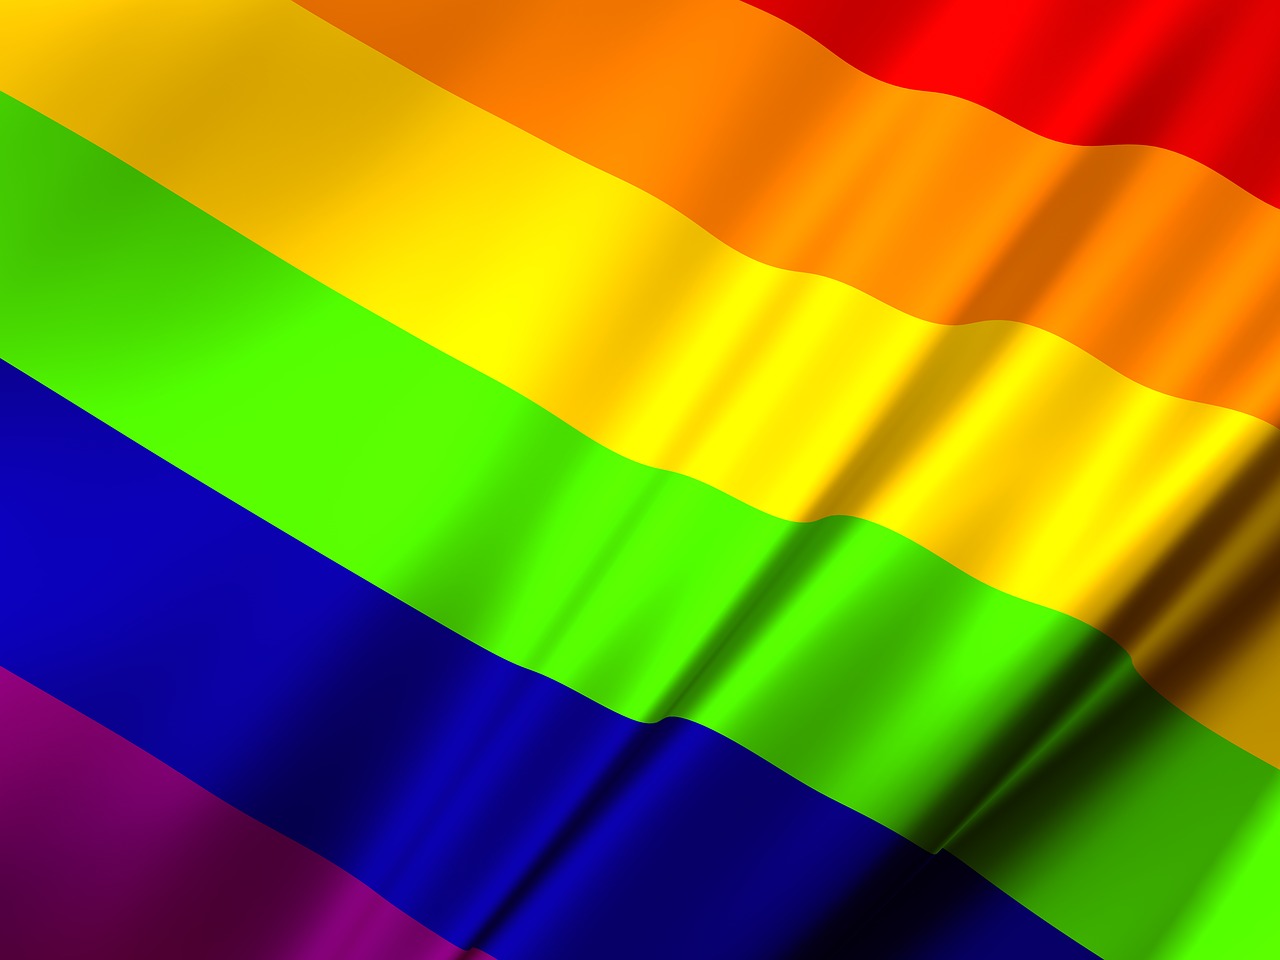 Desde la Cátedra de Igualdad de Género y Diversidad “Clara Campoamor” UCLM, nos sumamos al día internacional del orgullo LGTBI